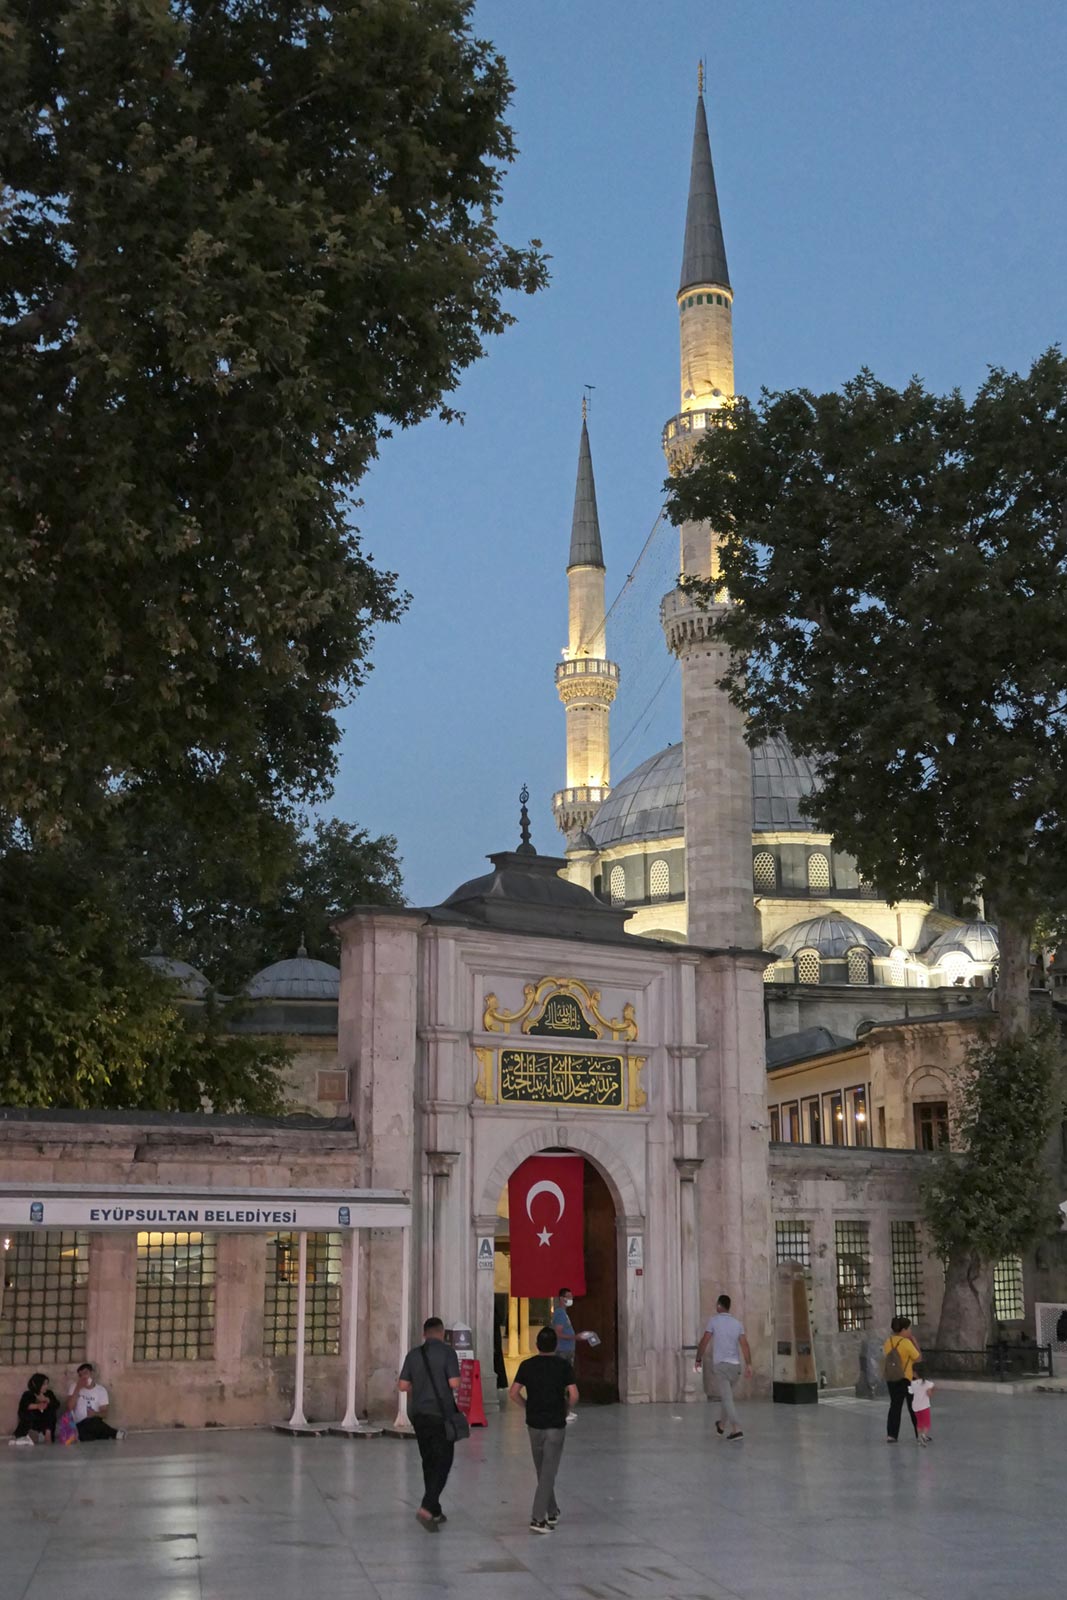 ضريح السلطان أيوب ، اسطنبول